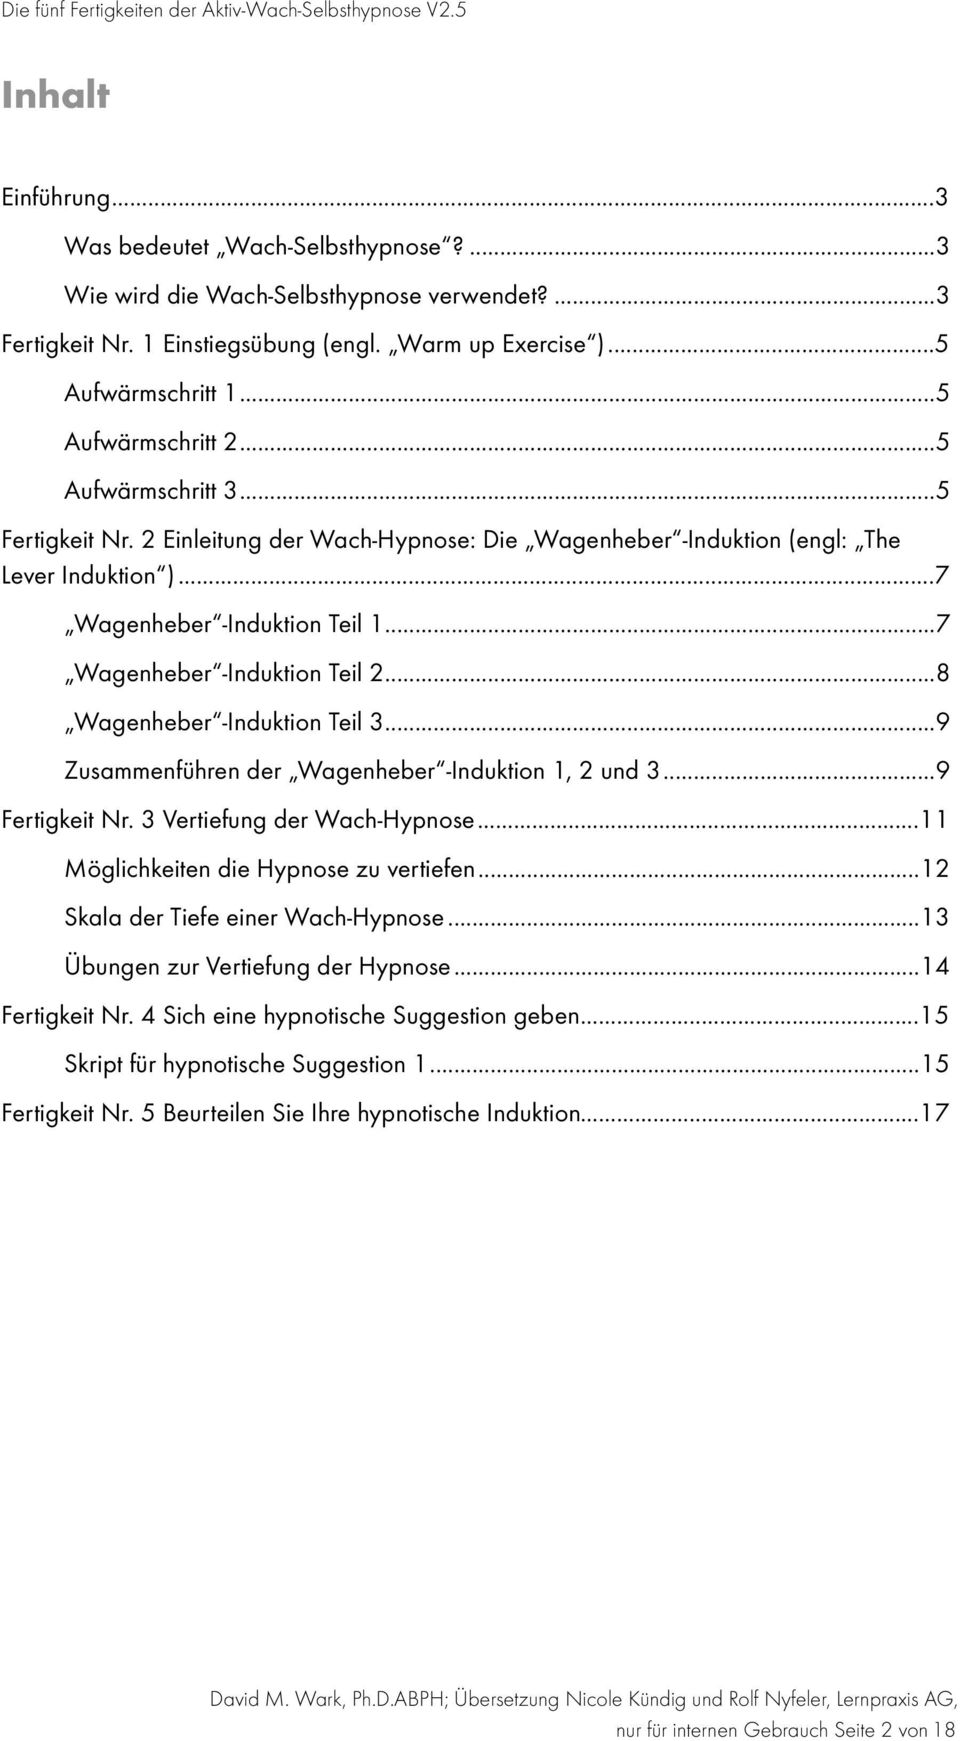 .. 7 Wagenheber -Induktion Teil 2... 8 Wagenheber -Induktion Teil 3... 9 Zusammenführen der Wagenheber -Induktion 1, 2 und 3... 9 Fertigkeit Nr. 3 Vertiefung der Wach-Hypnose.